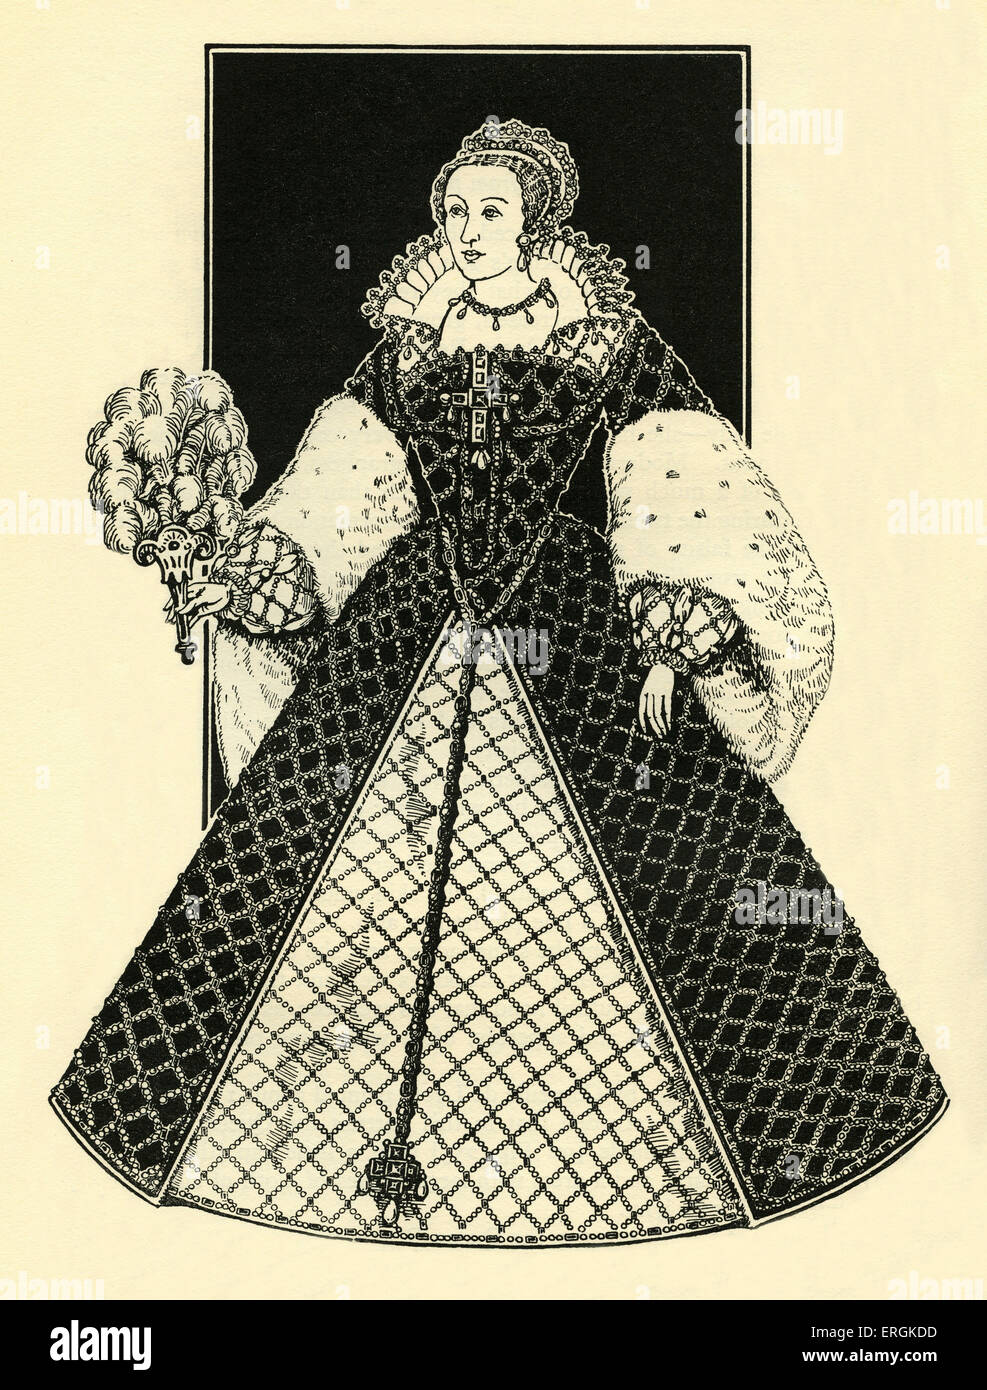 Caterina de' Medici regina di Francia (1519-1589). Figlia di Lorenzo II de' Medici (1492-1519) del fiorentino Medicis, Foto Stock